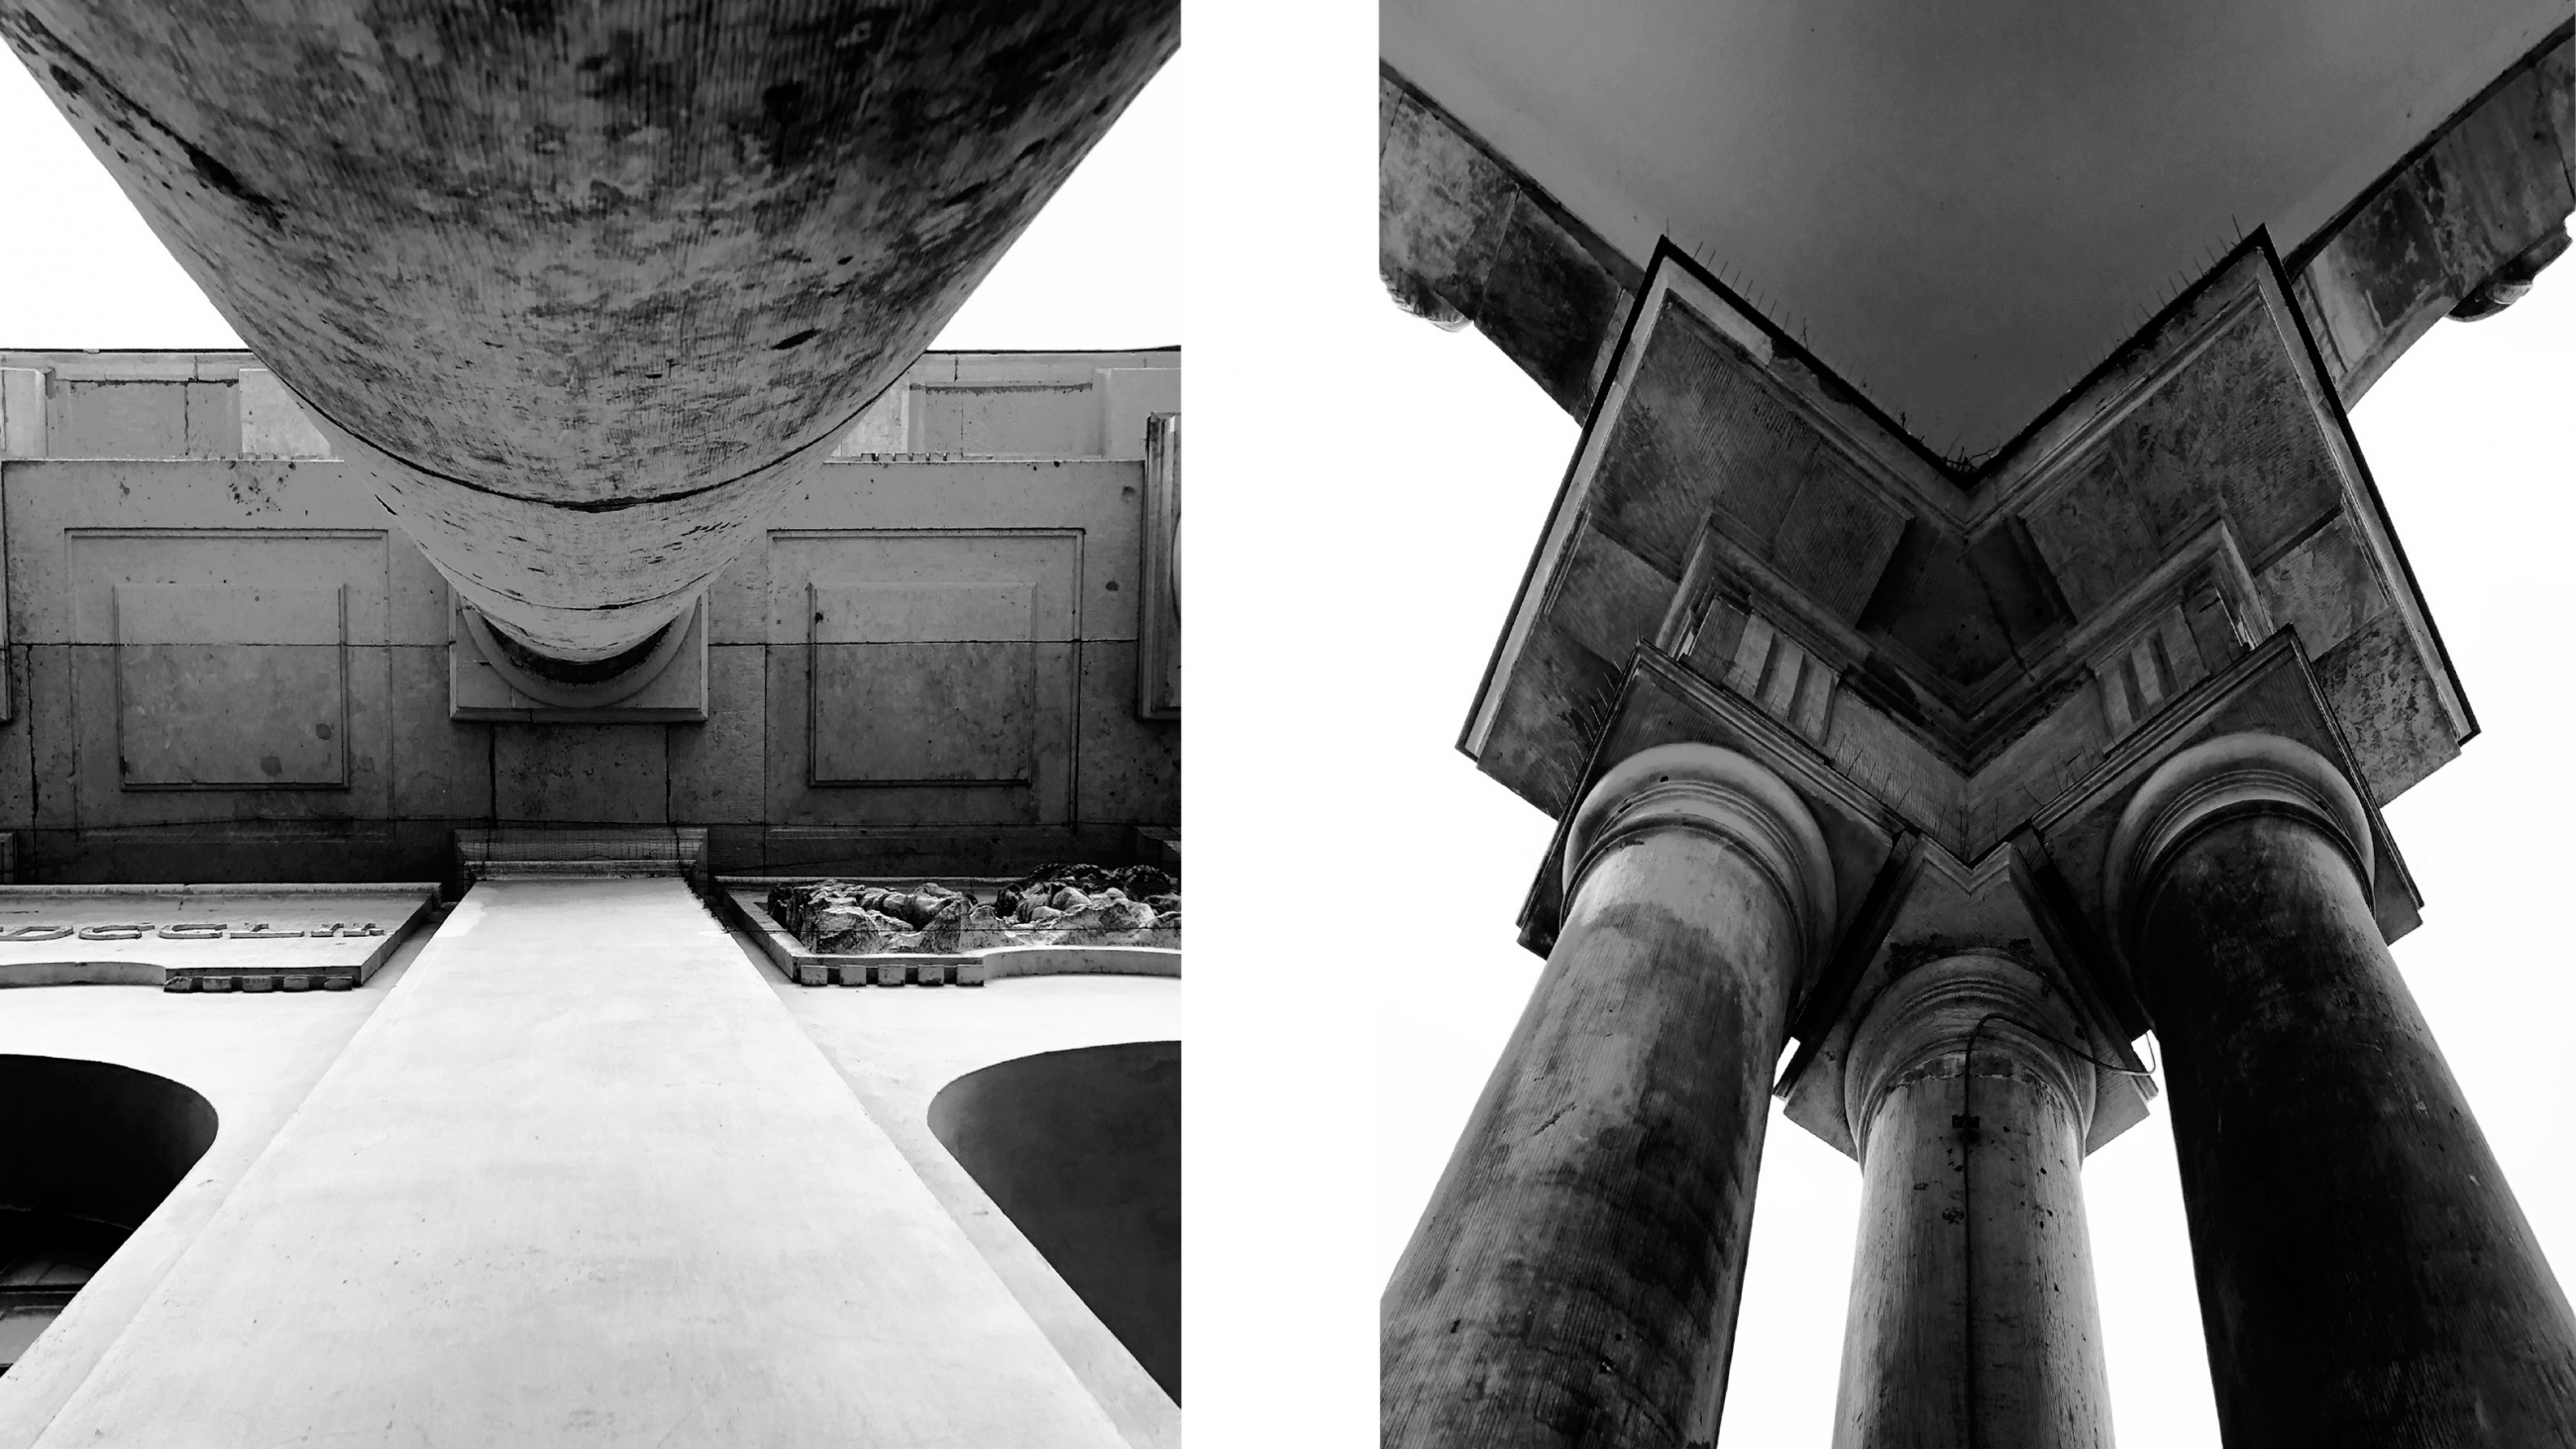 Zwei schwarz-weiß Fotografien von Säulen eines Gebäudes aus der Ausstellung "HAUS UND STRASSE" des Studiengangs Architektur und Städtbeau